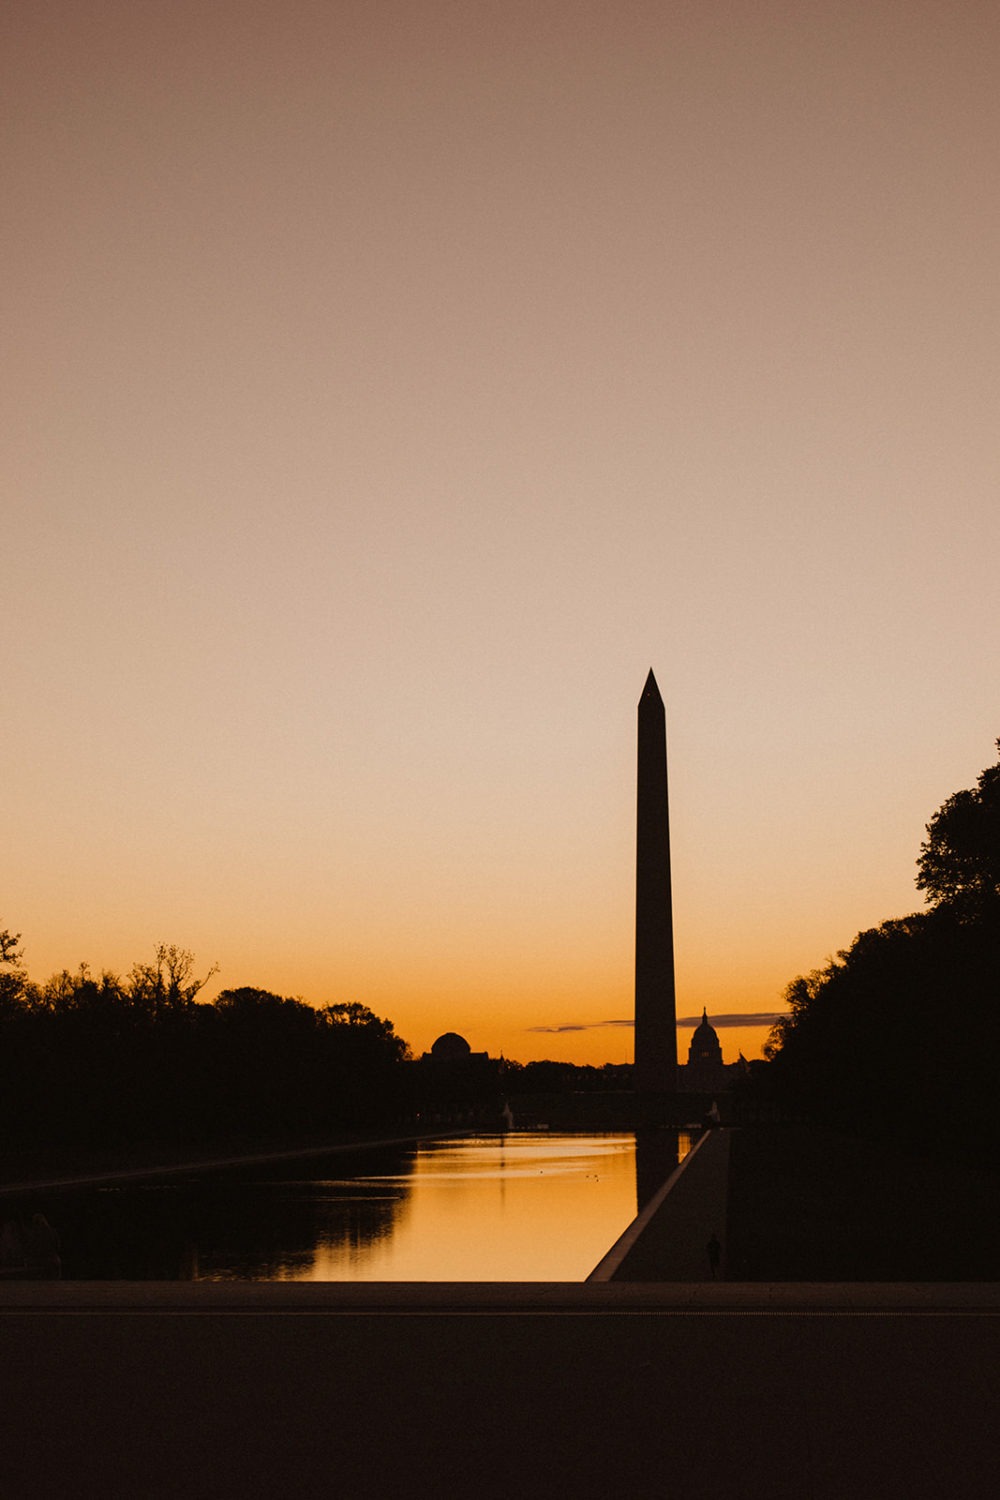 The Washington Monument at sunrise by Reflecting Pool